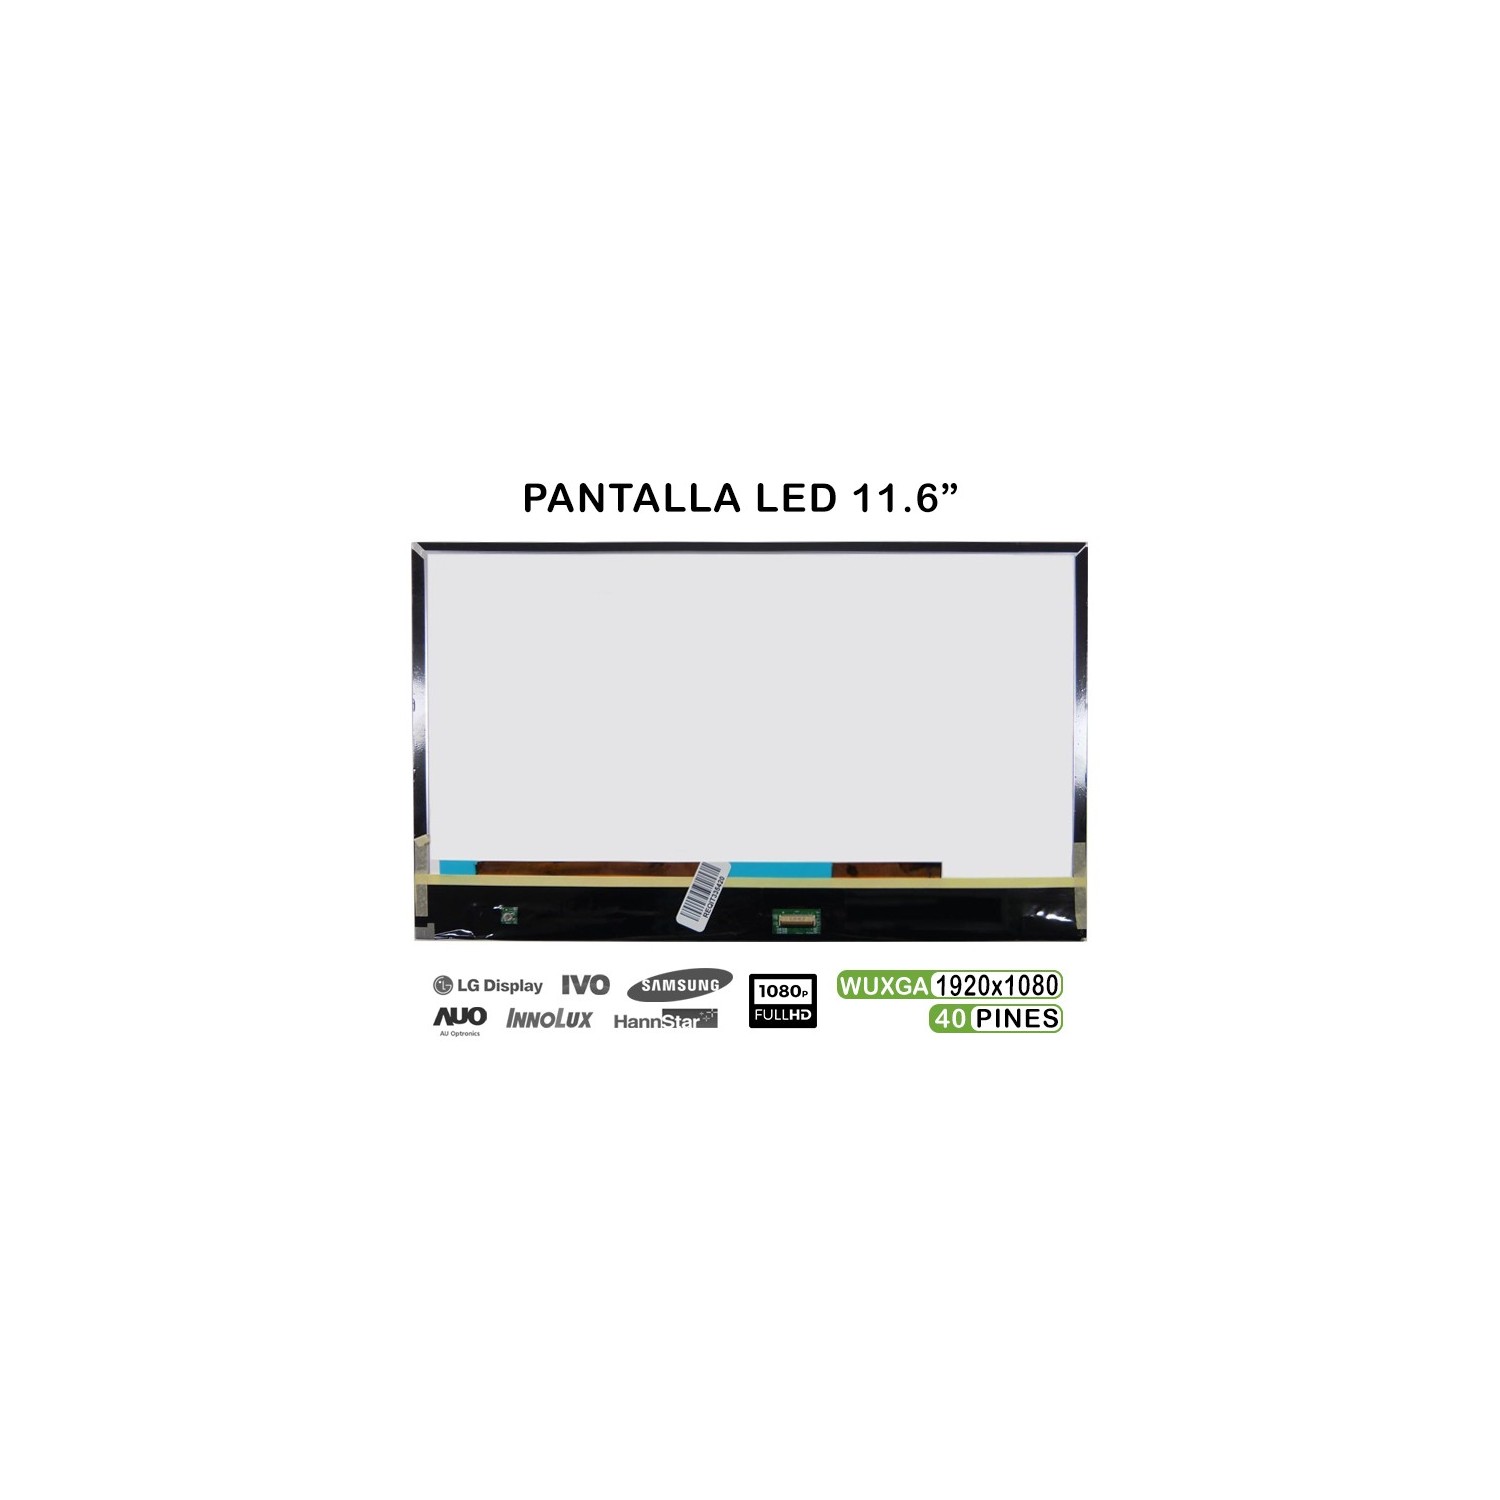 PANTALLA LED PARA PORTÁTIL B116HAN03.1 11.6"